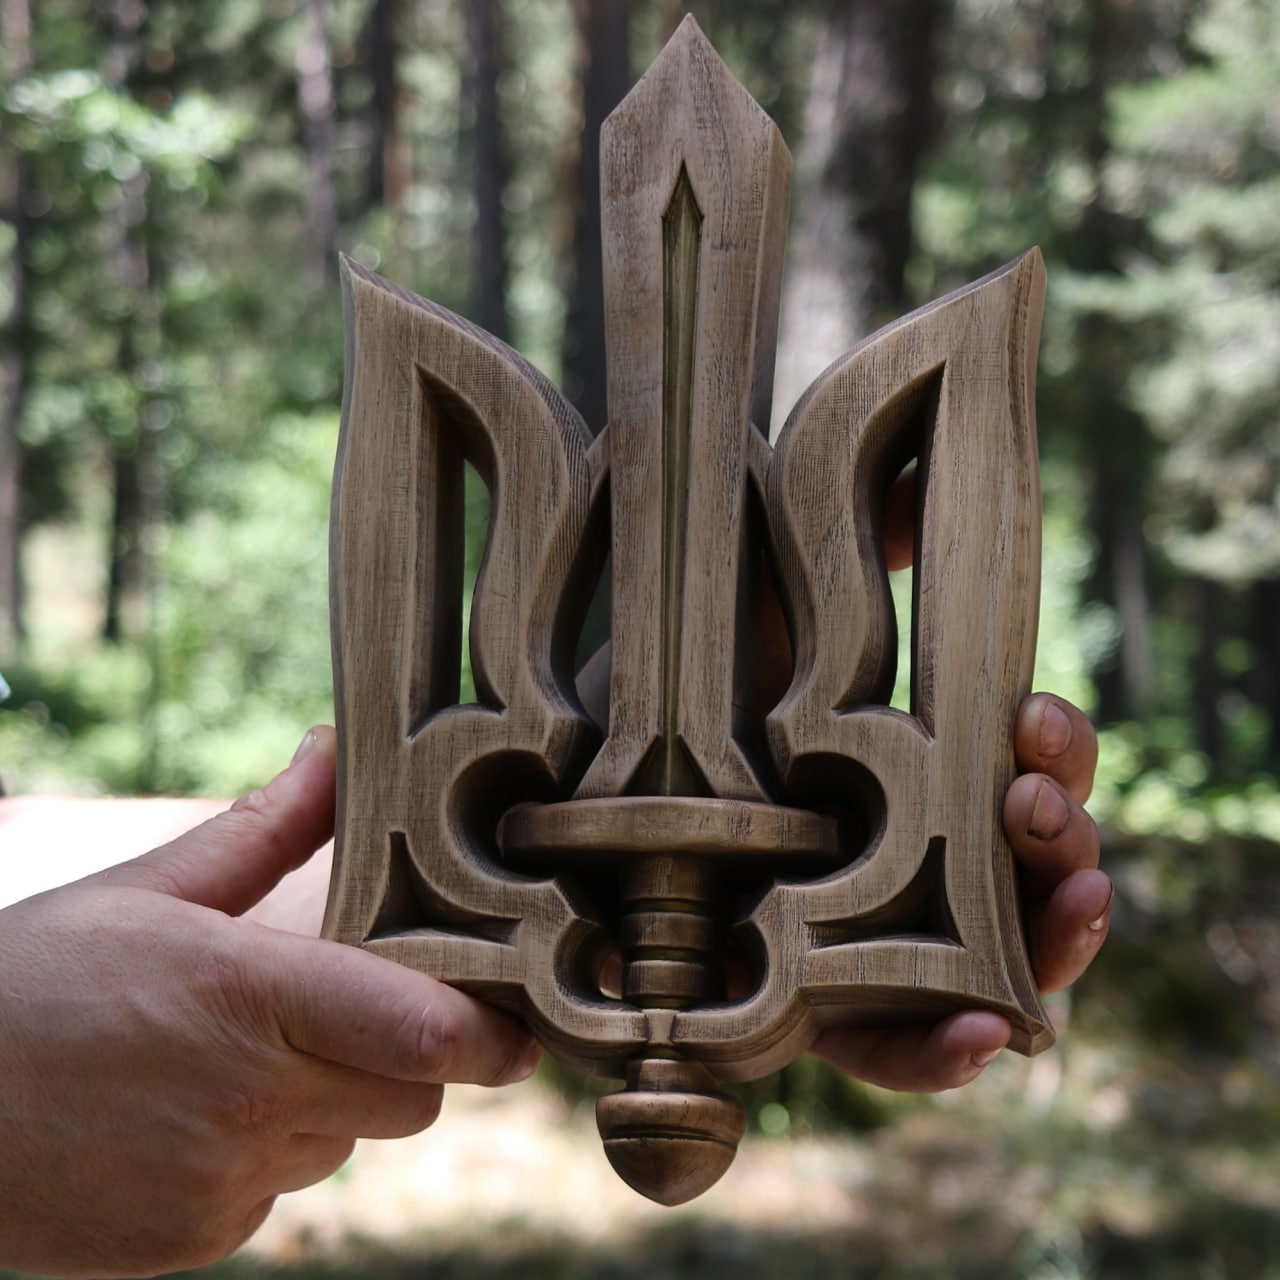 Ukrainian Trident Tryzub, Coat of arms of Ukraine, wooden statue